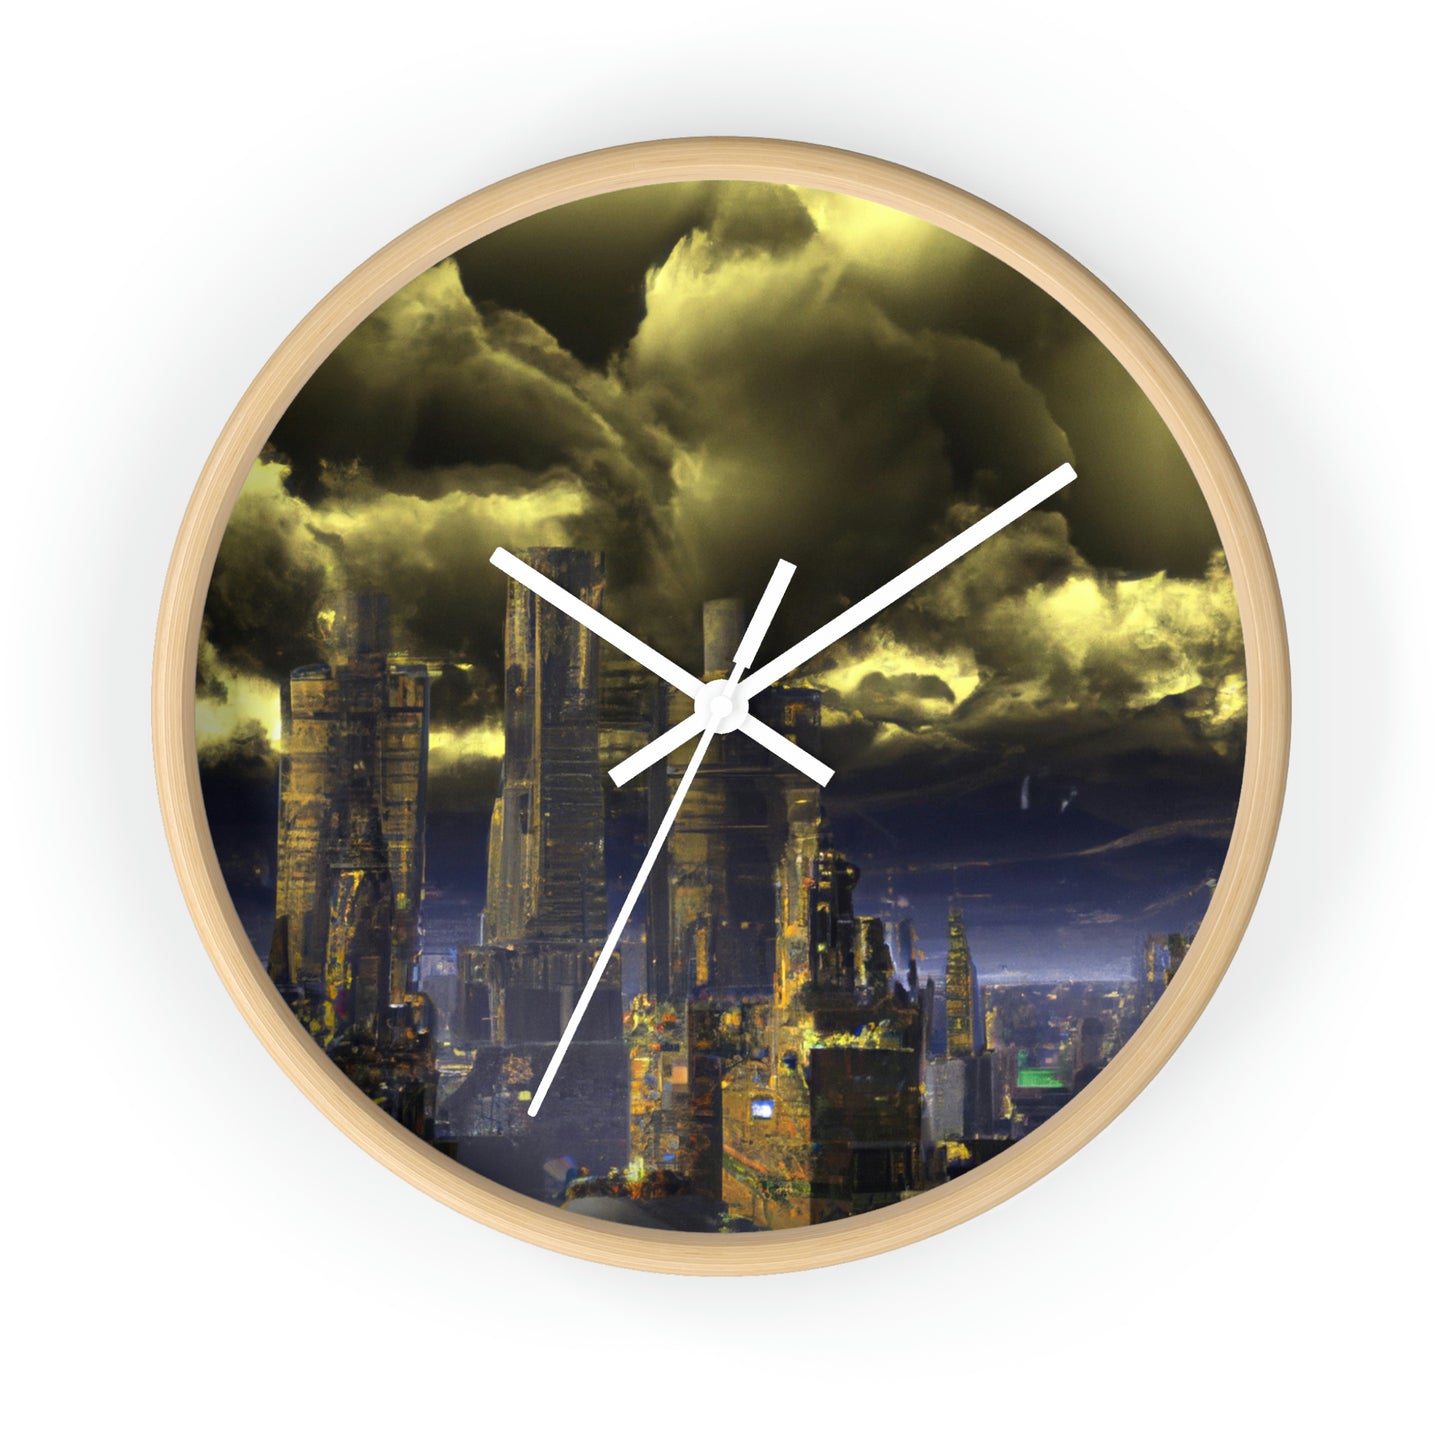 La ciudadela utópica en la tempestad distópica - El reloj de pared alienígena